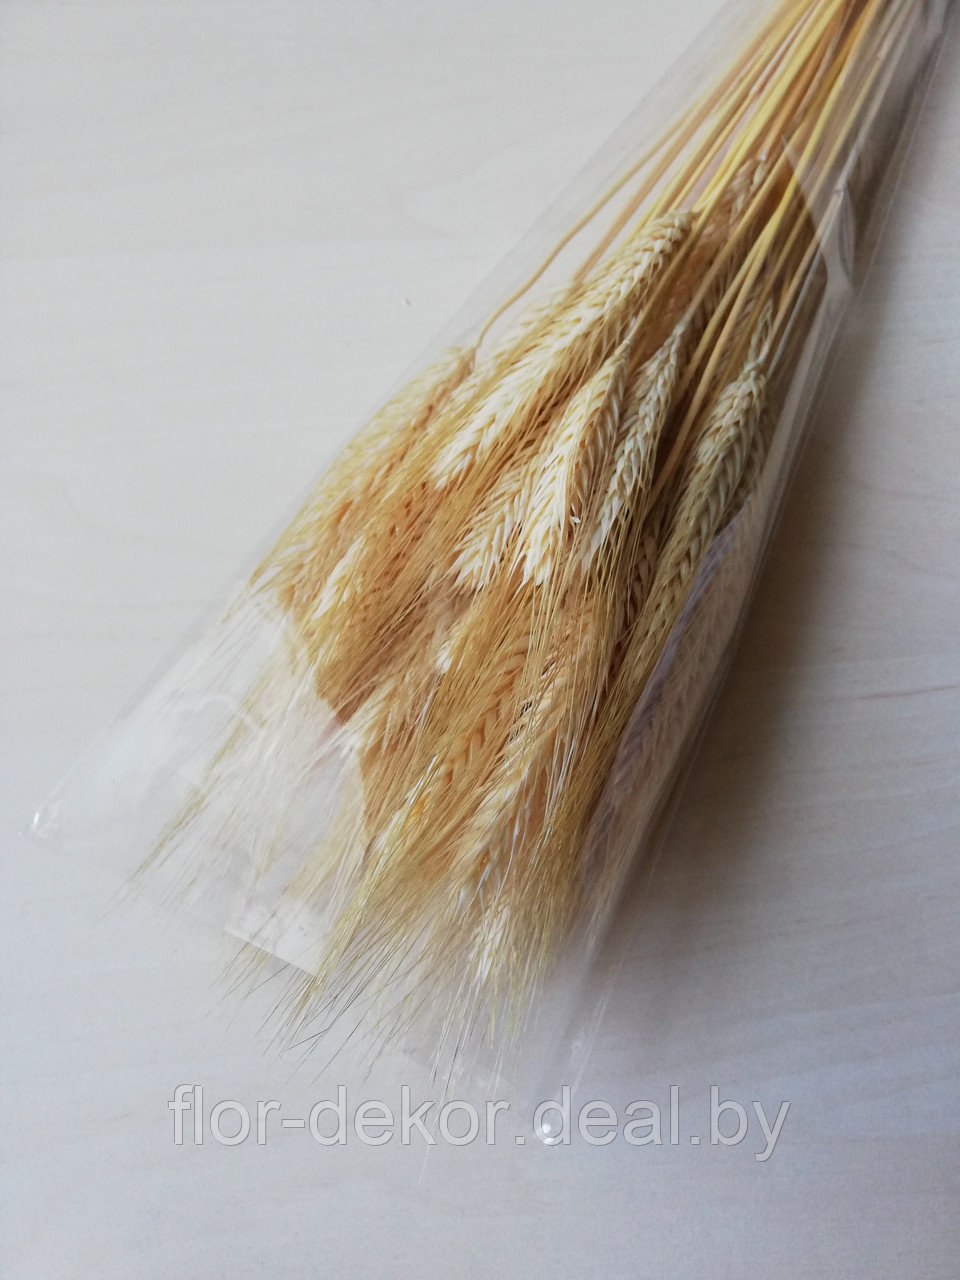 Колосья пшеницы остистой ,натуральные осветленные, 50+шт.